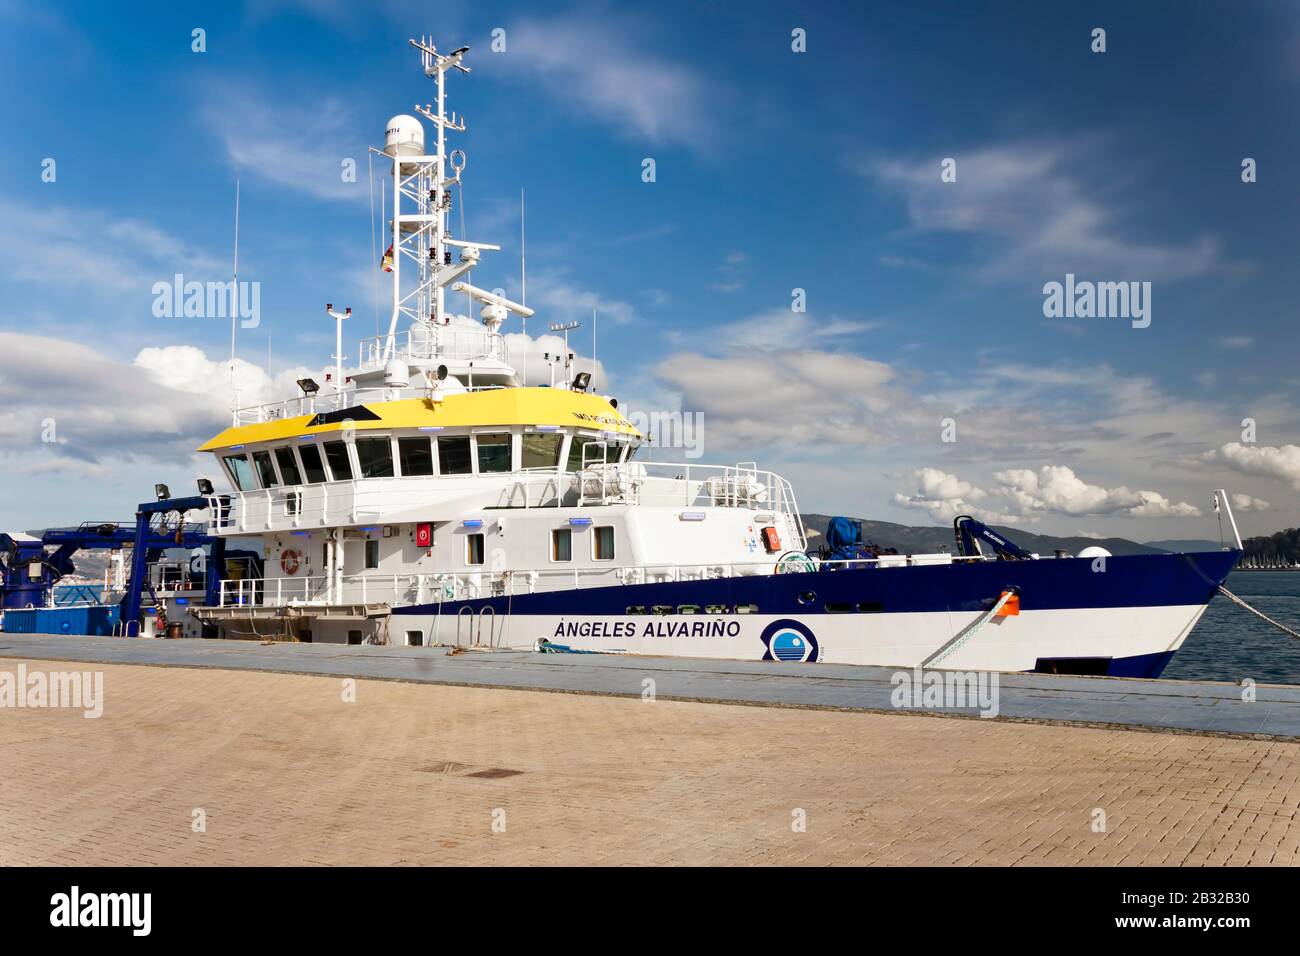 Vigo, Espagne - 24 janvier 2020: Angeles Alvariño navire de recherche océanographique polyvalent amarré au port le 24 janvier 2020 à Vigo, Pontevedr Banque D'Images